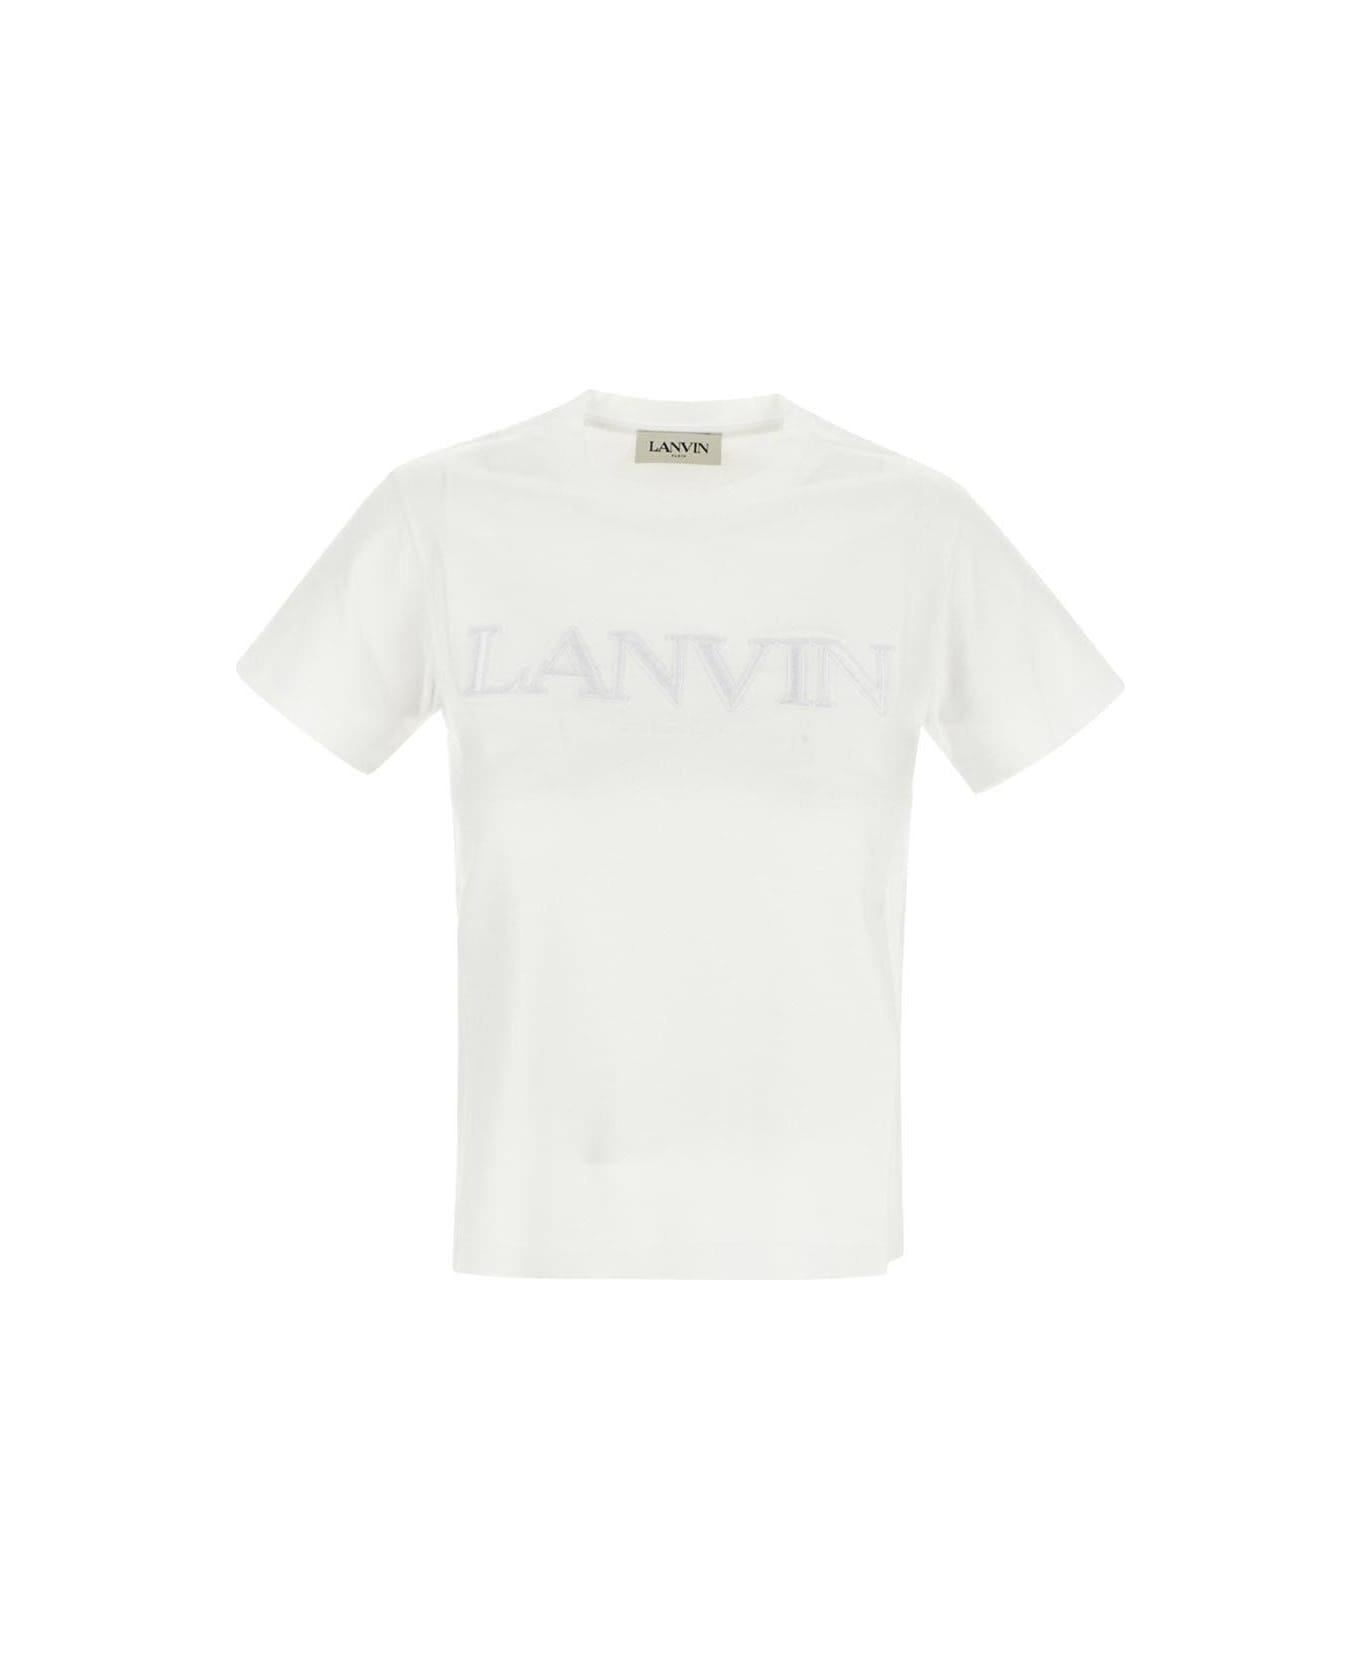 Lanvin Tee T-shirt